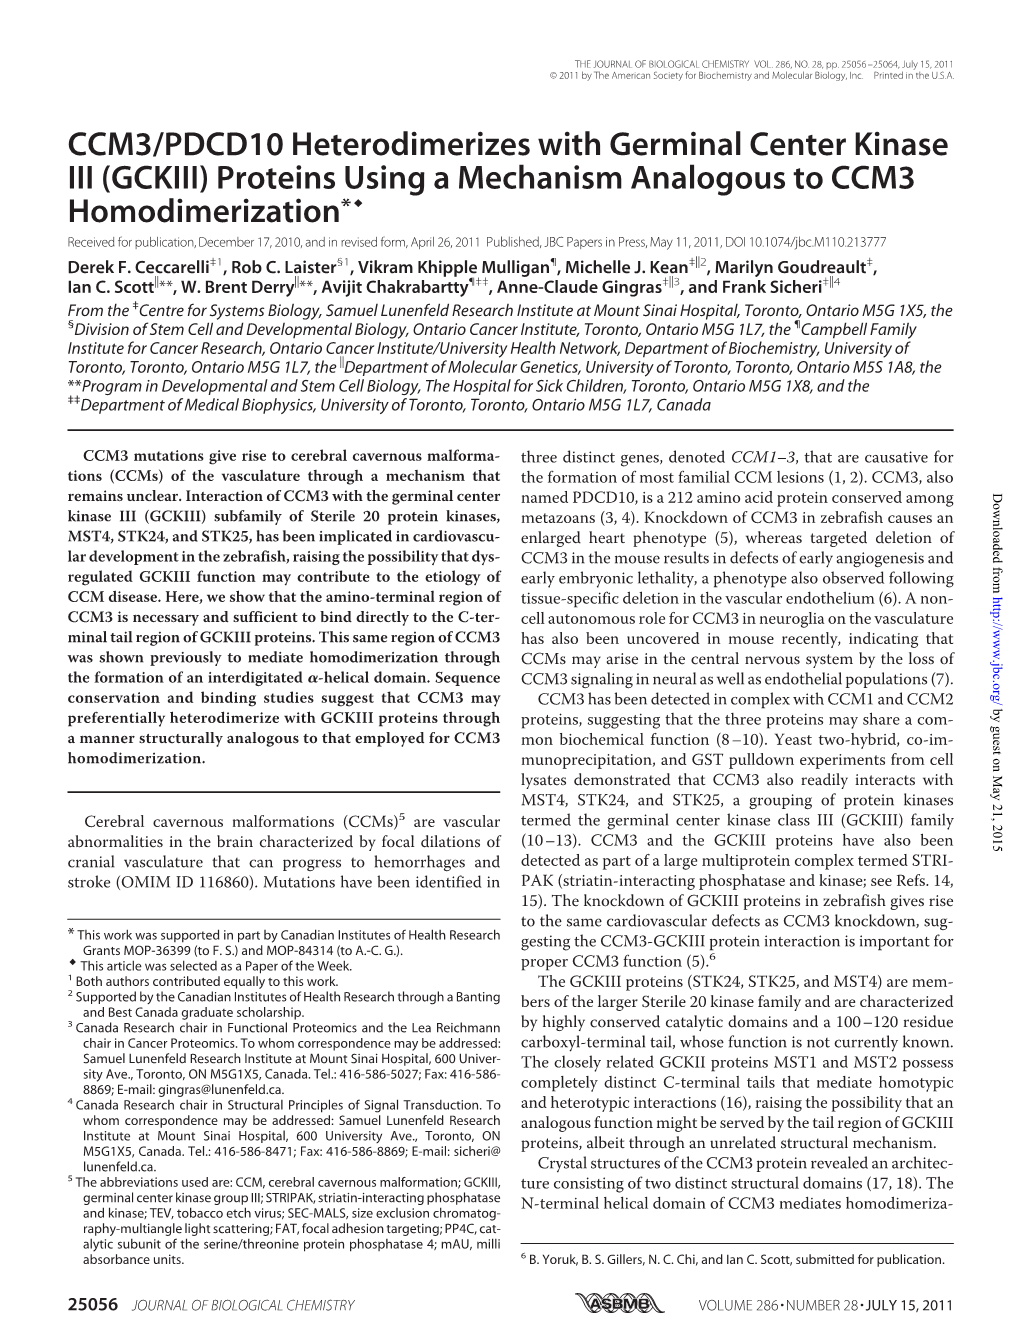 CCM3/PDCD10 Heterodimerizes With